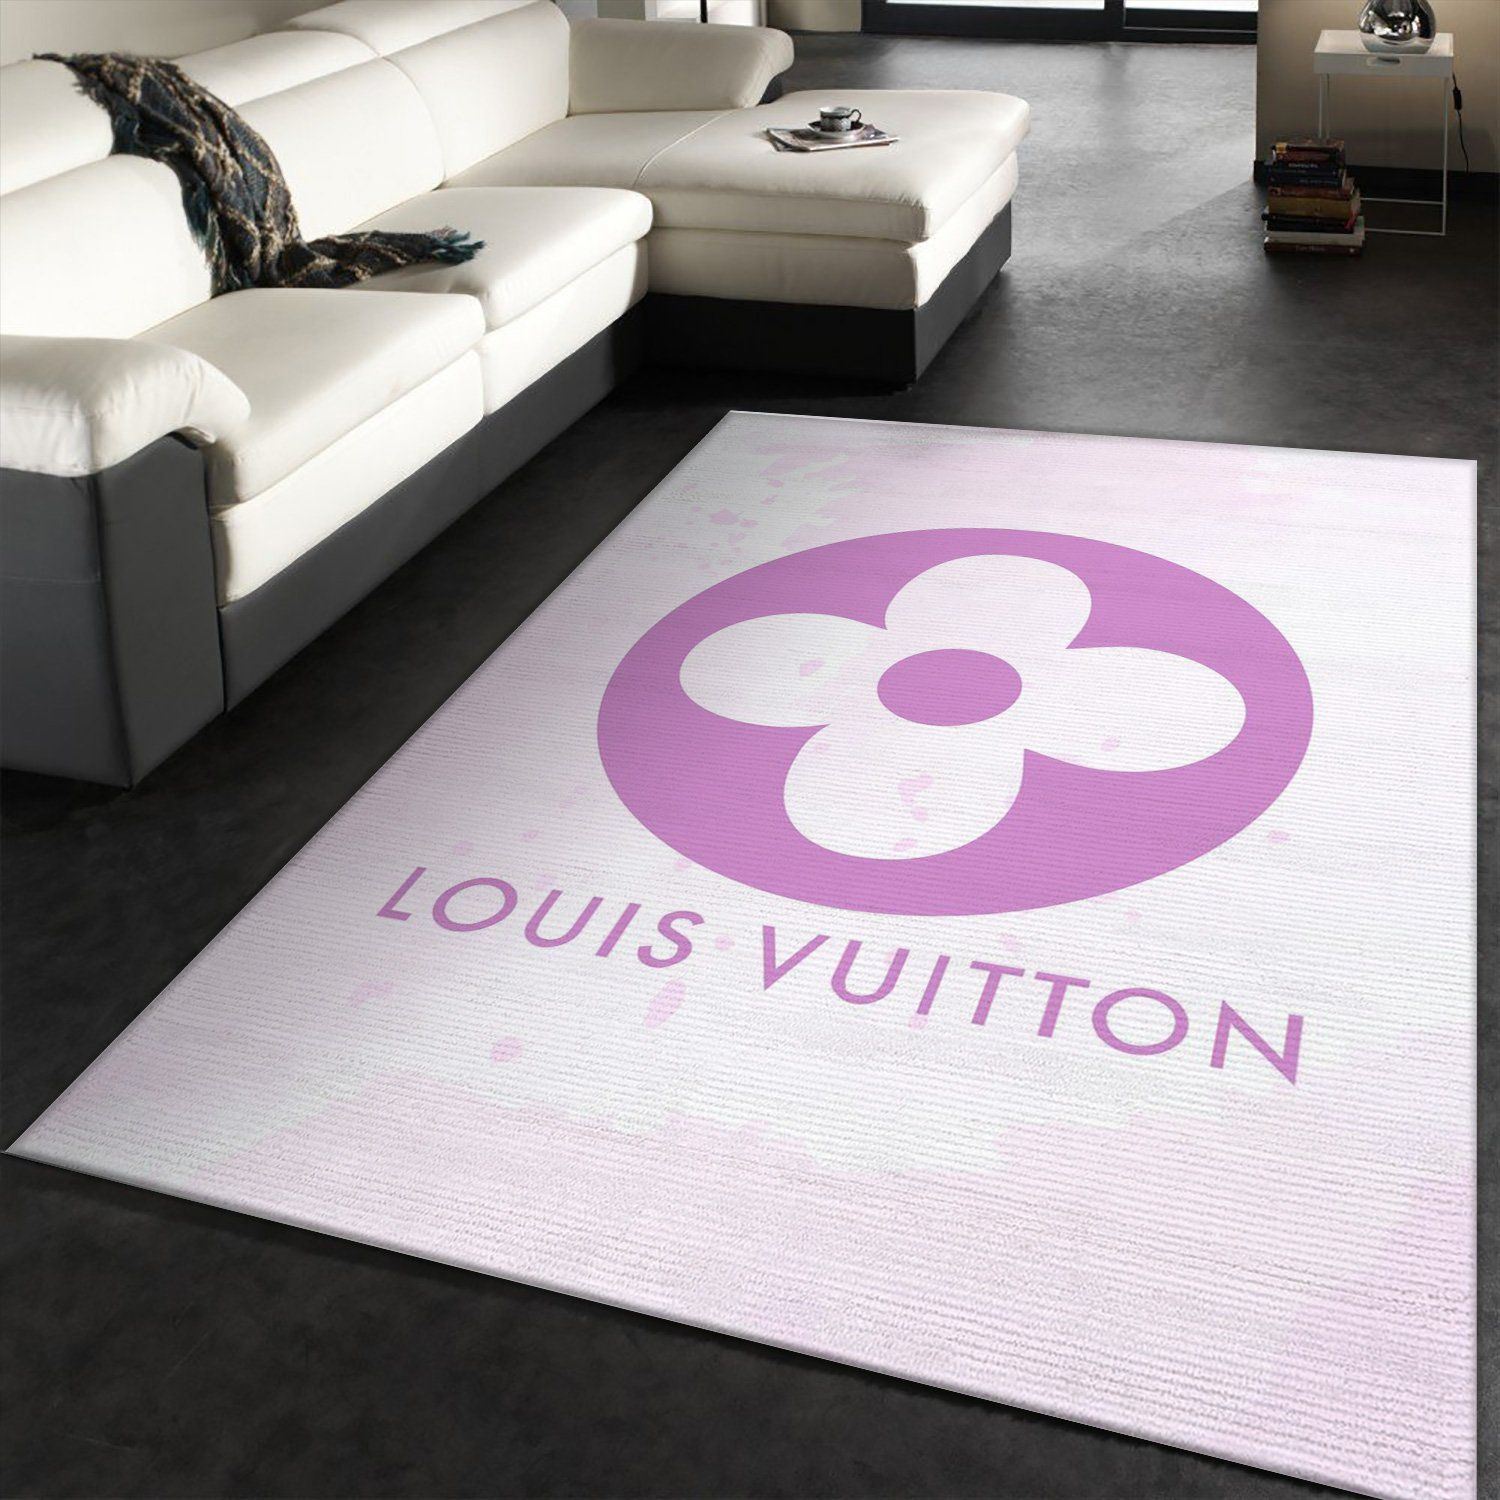 Louis Vuitton Rug Bedroom Rug Christmas Gift US Decor